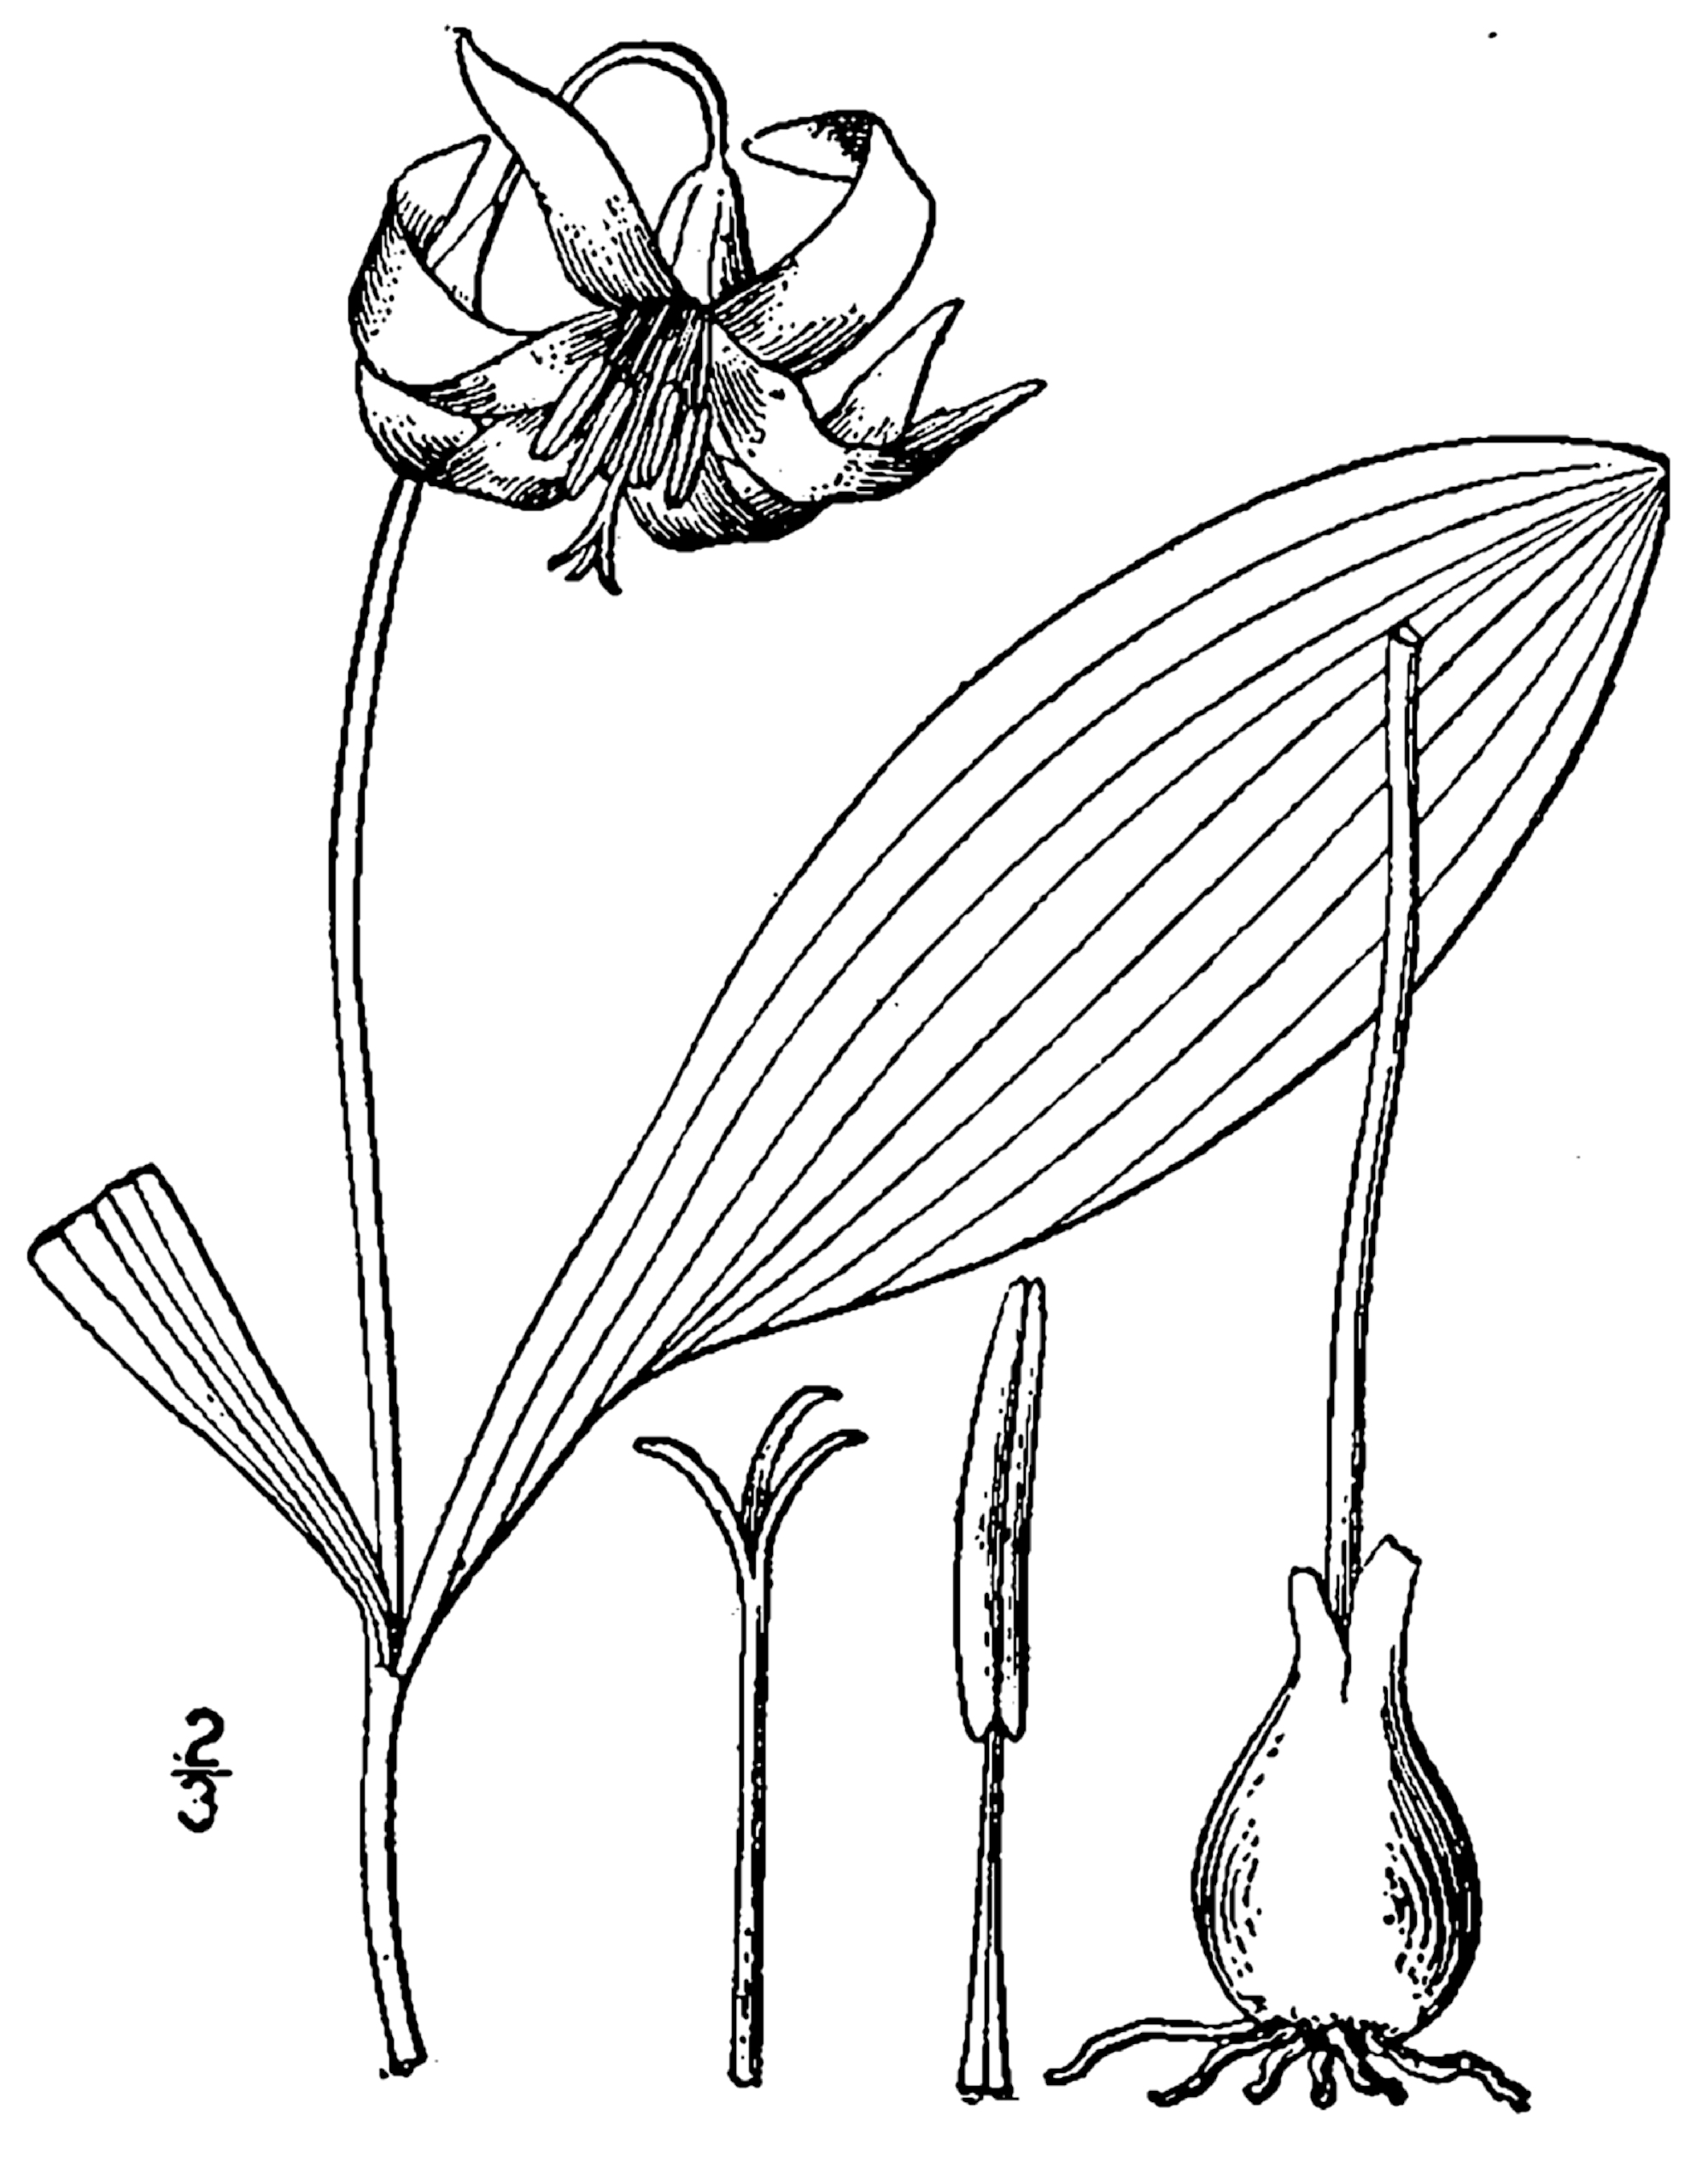 1913 illustration of Erythronium albidum.